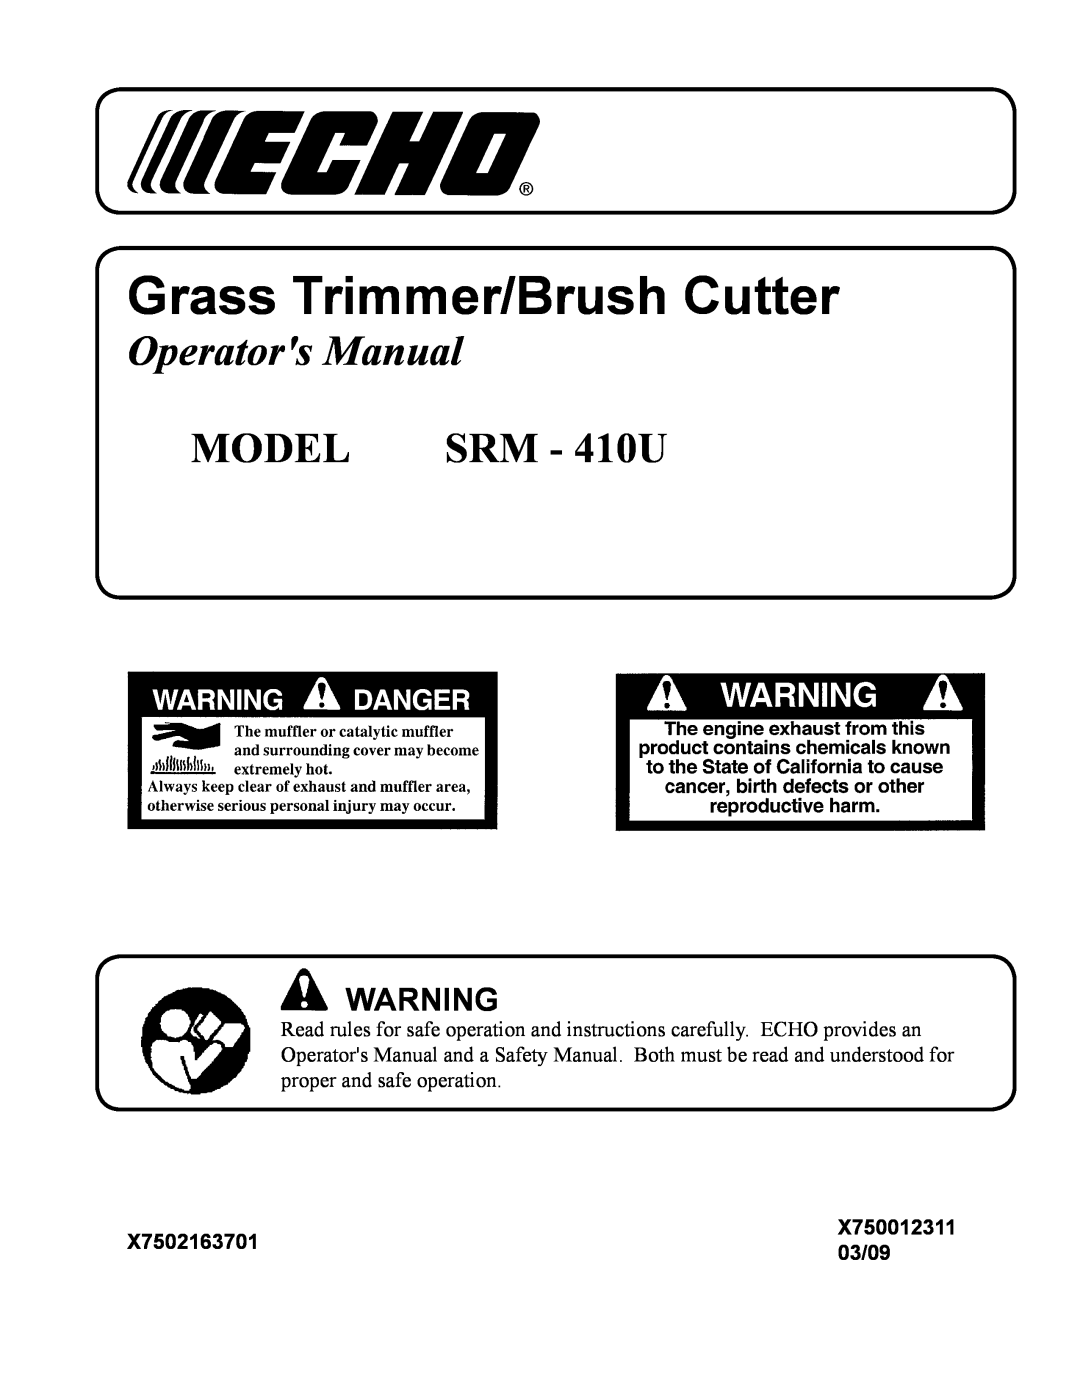 Echo manual X7502163701, 03/09, Grass Trimmer/Brush Cutter, Operators Manual, MODEL SRM - 410U, X750012311 